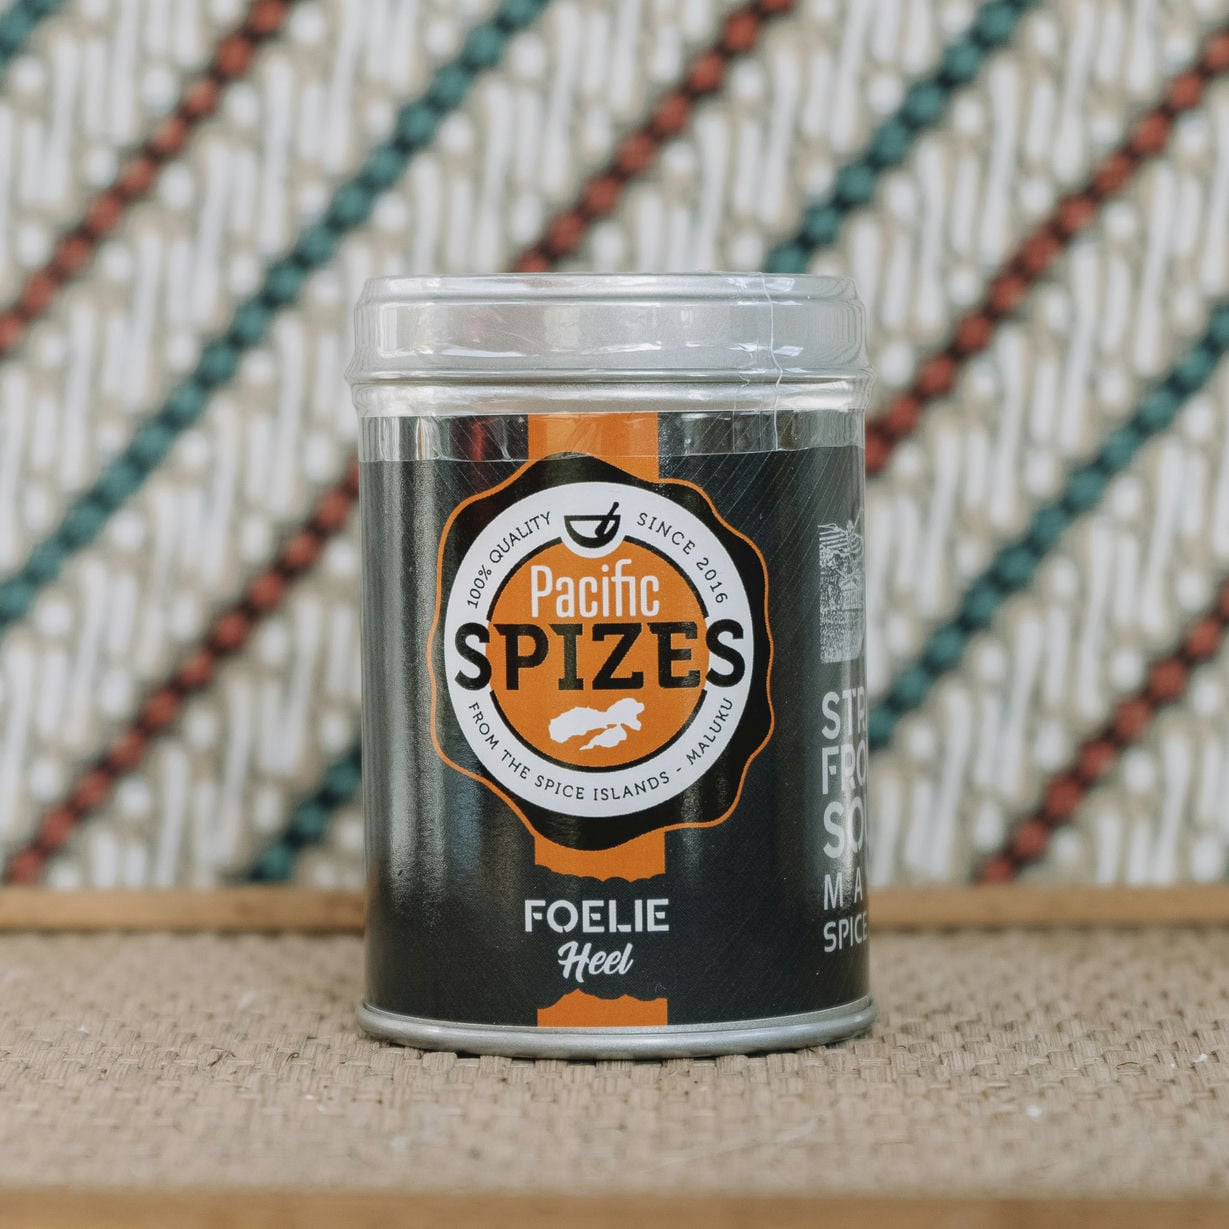 Foelie heel van Pacific Spizes. Foelie is een in de keuken gebruikte specerij met een vrij zachte smaak.